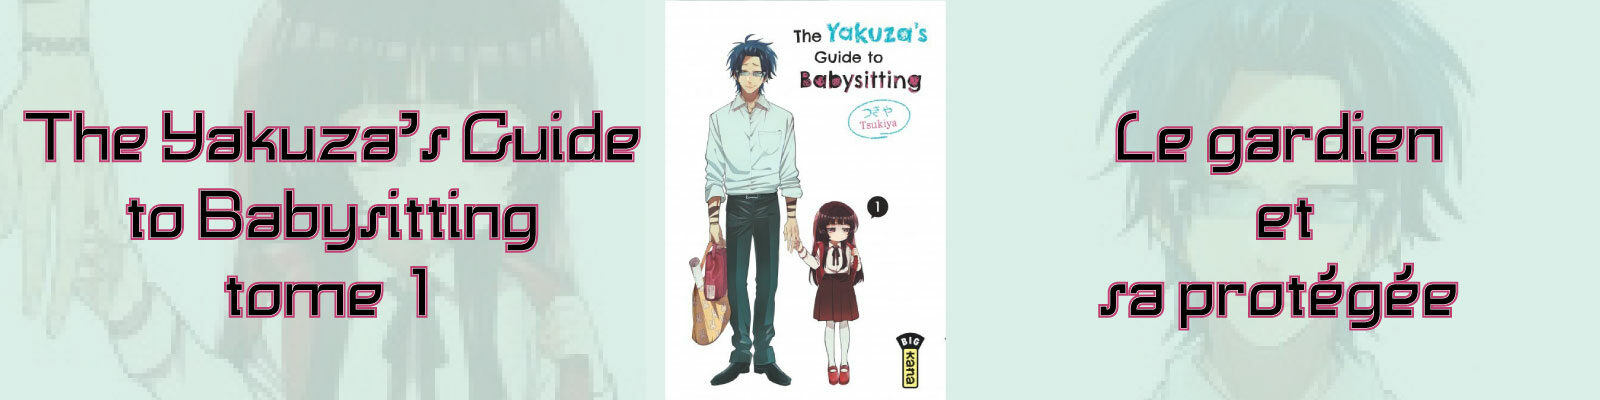 The Yakuza's Guide to Babysitting-T1